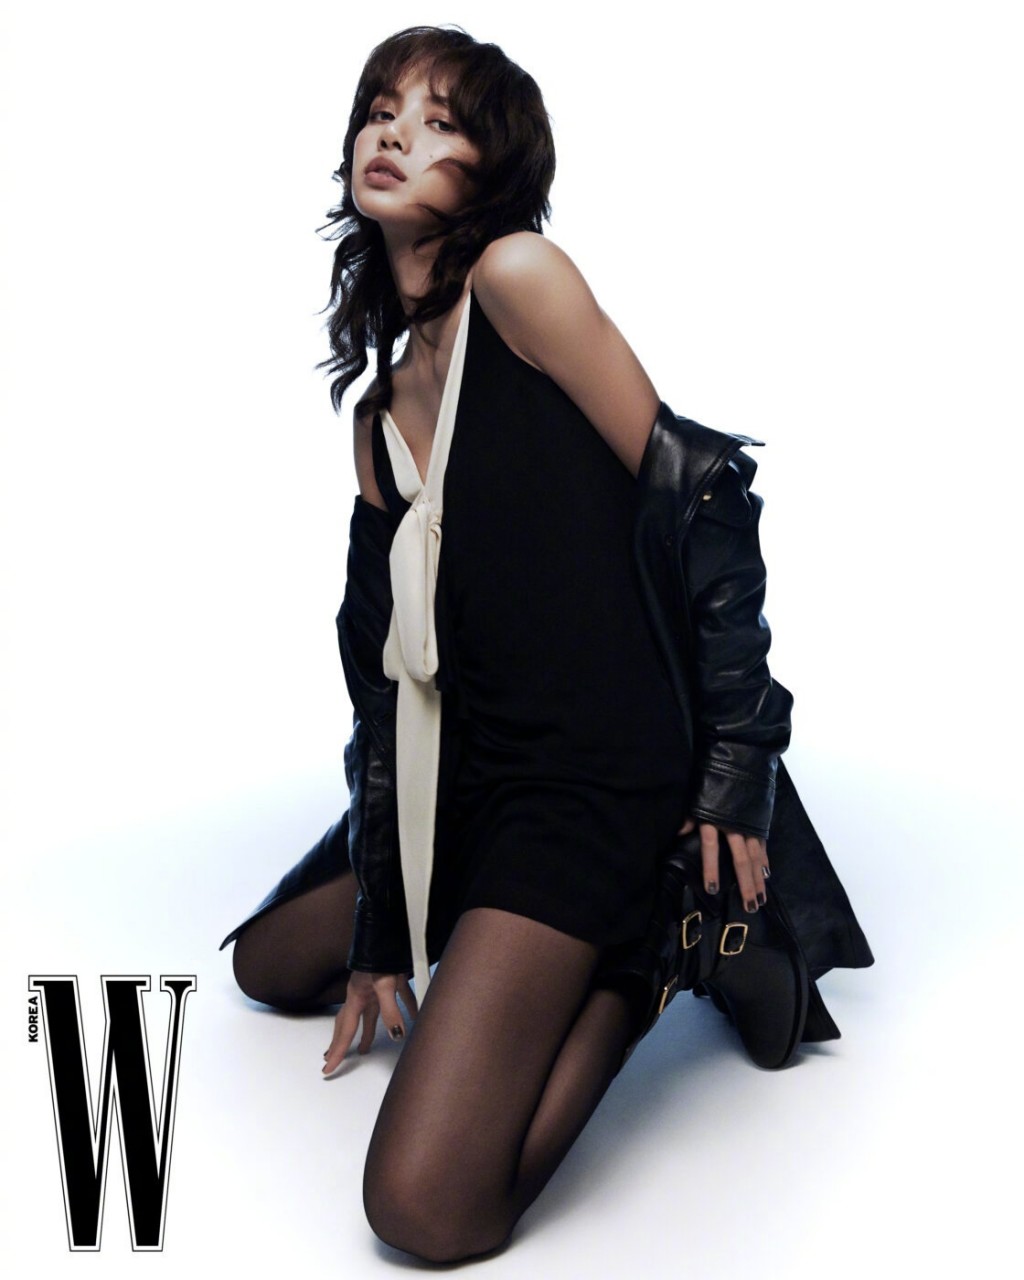 LISA烟熏卷发造型酷帅时髦封面画报图片